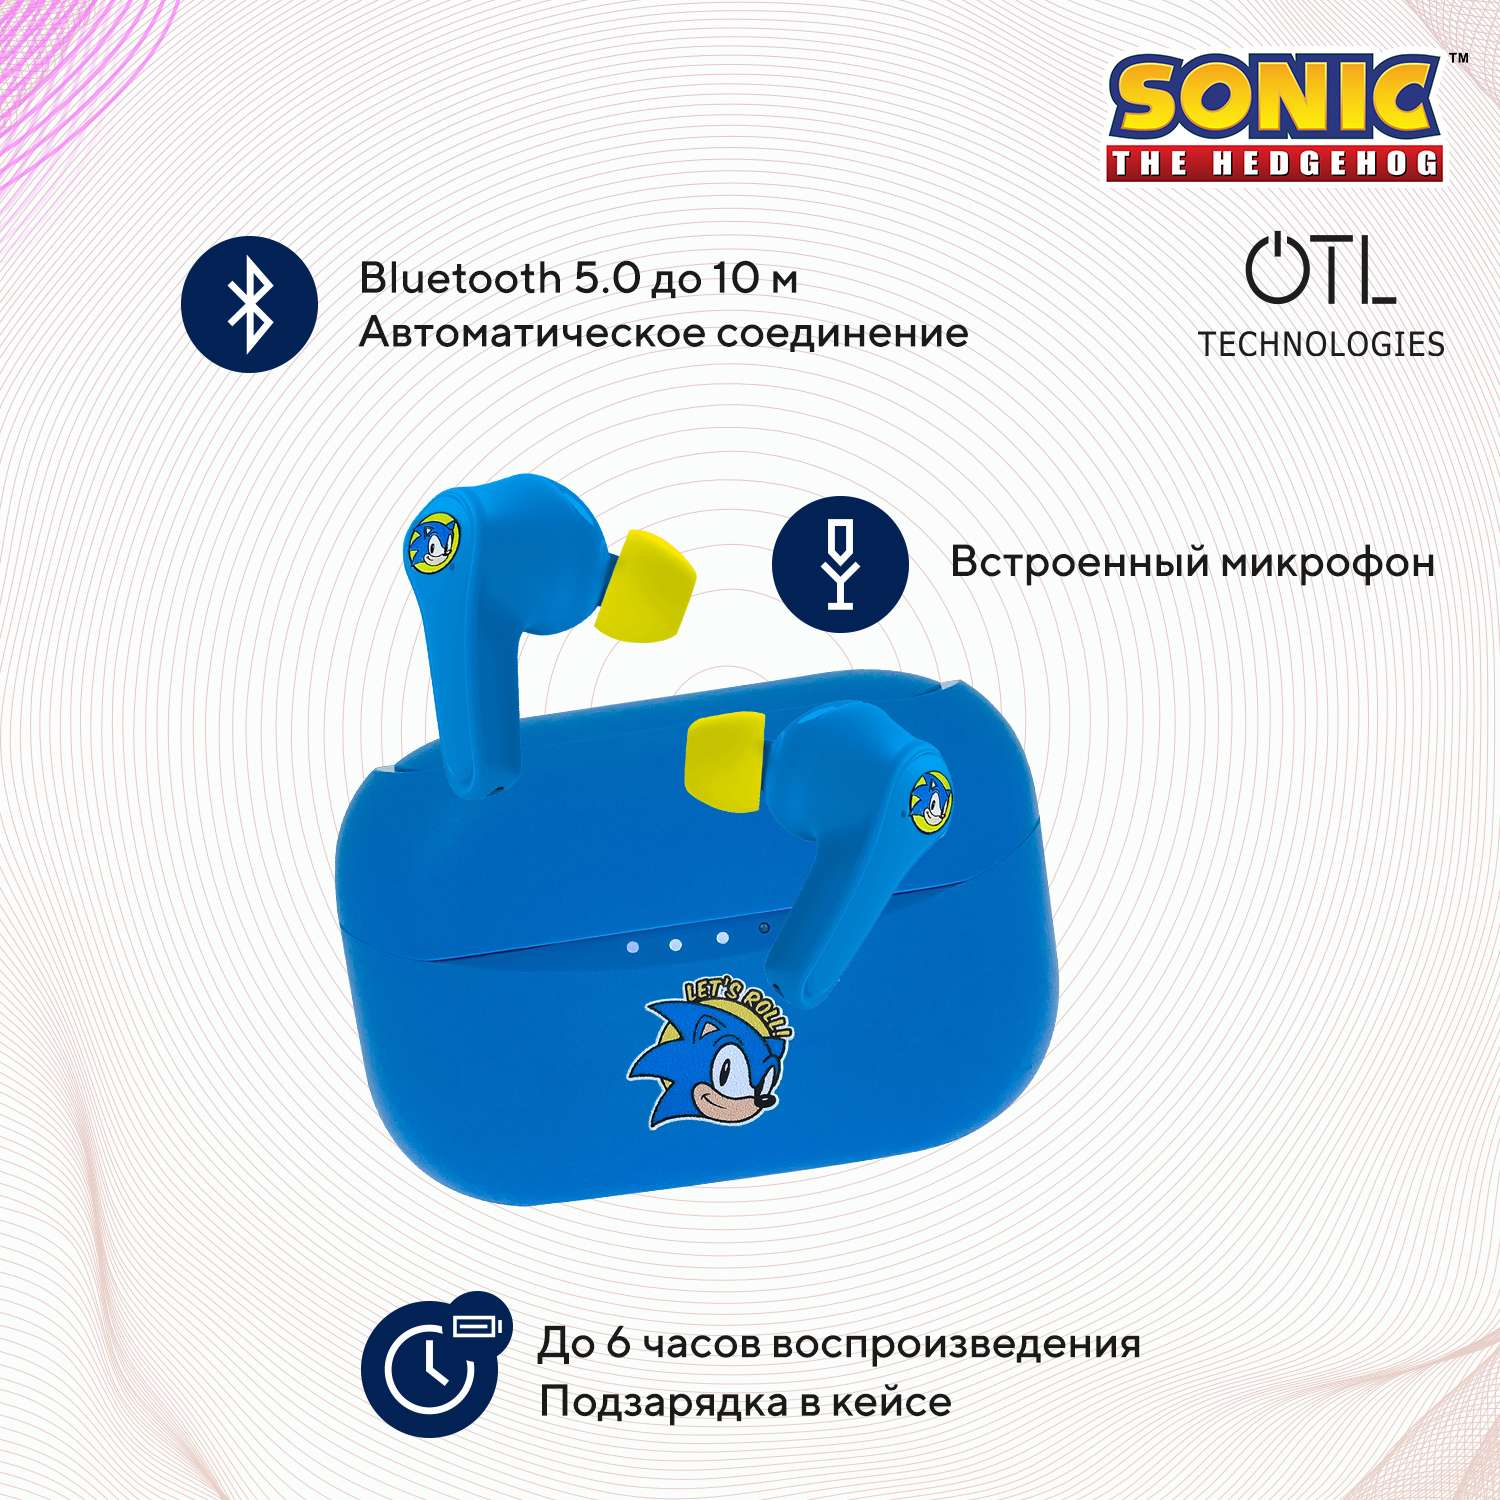 Наушники беспроводные OTL Technologies Sonic the Hedgehog - фото 2